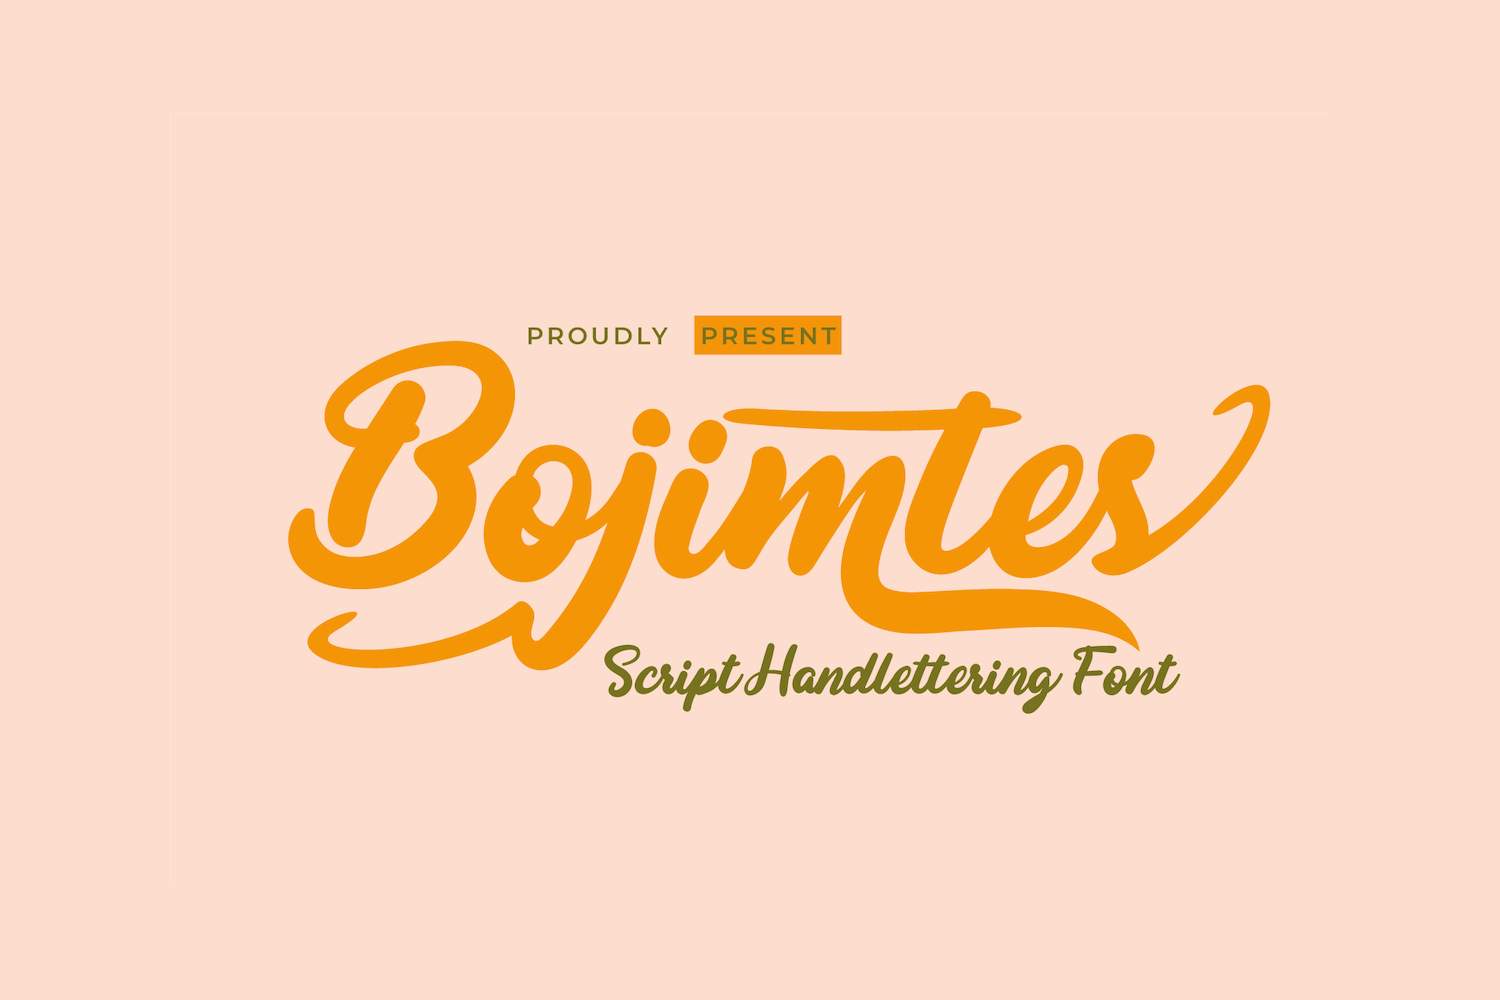 Bojimtes Free Font